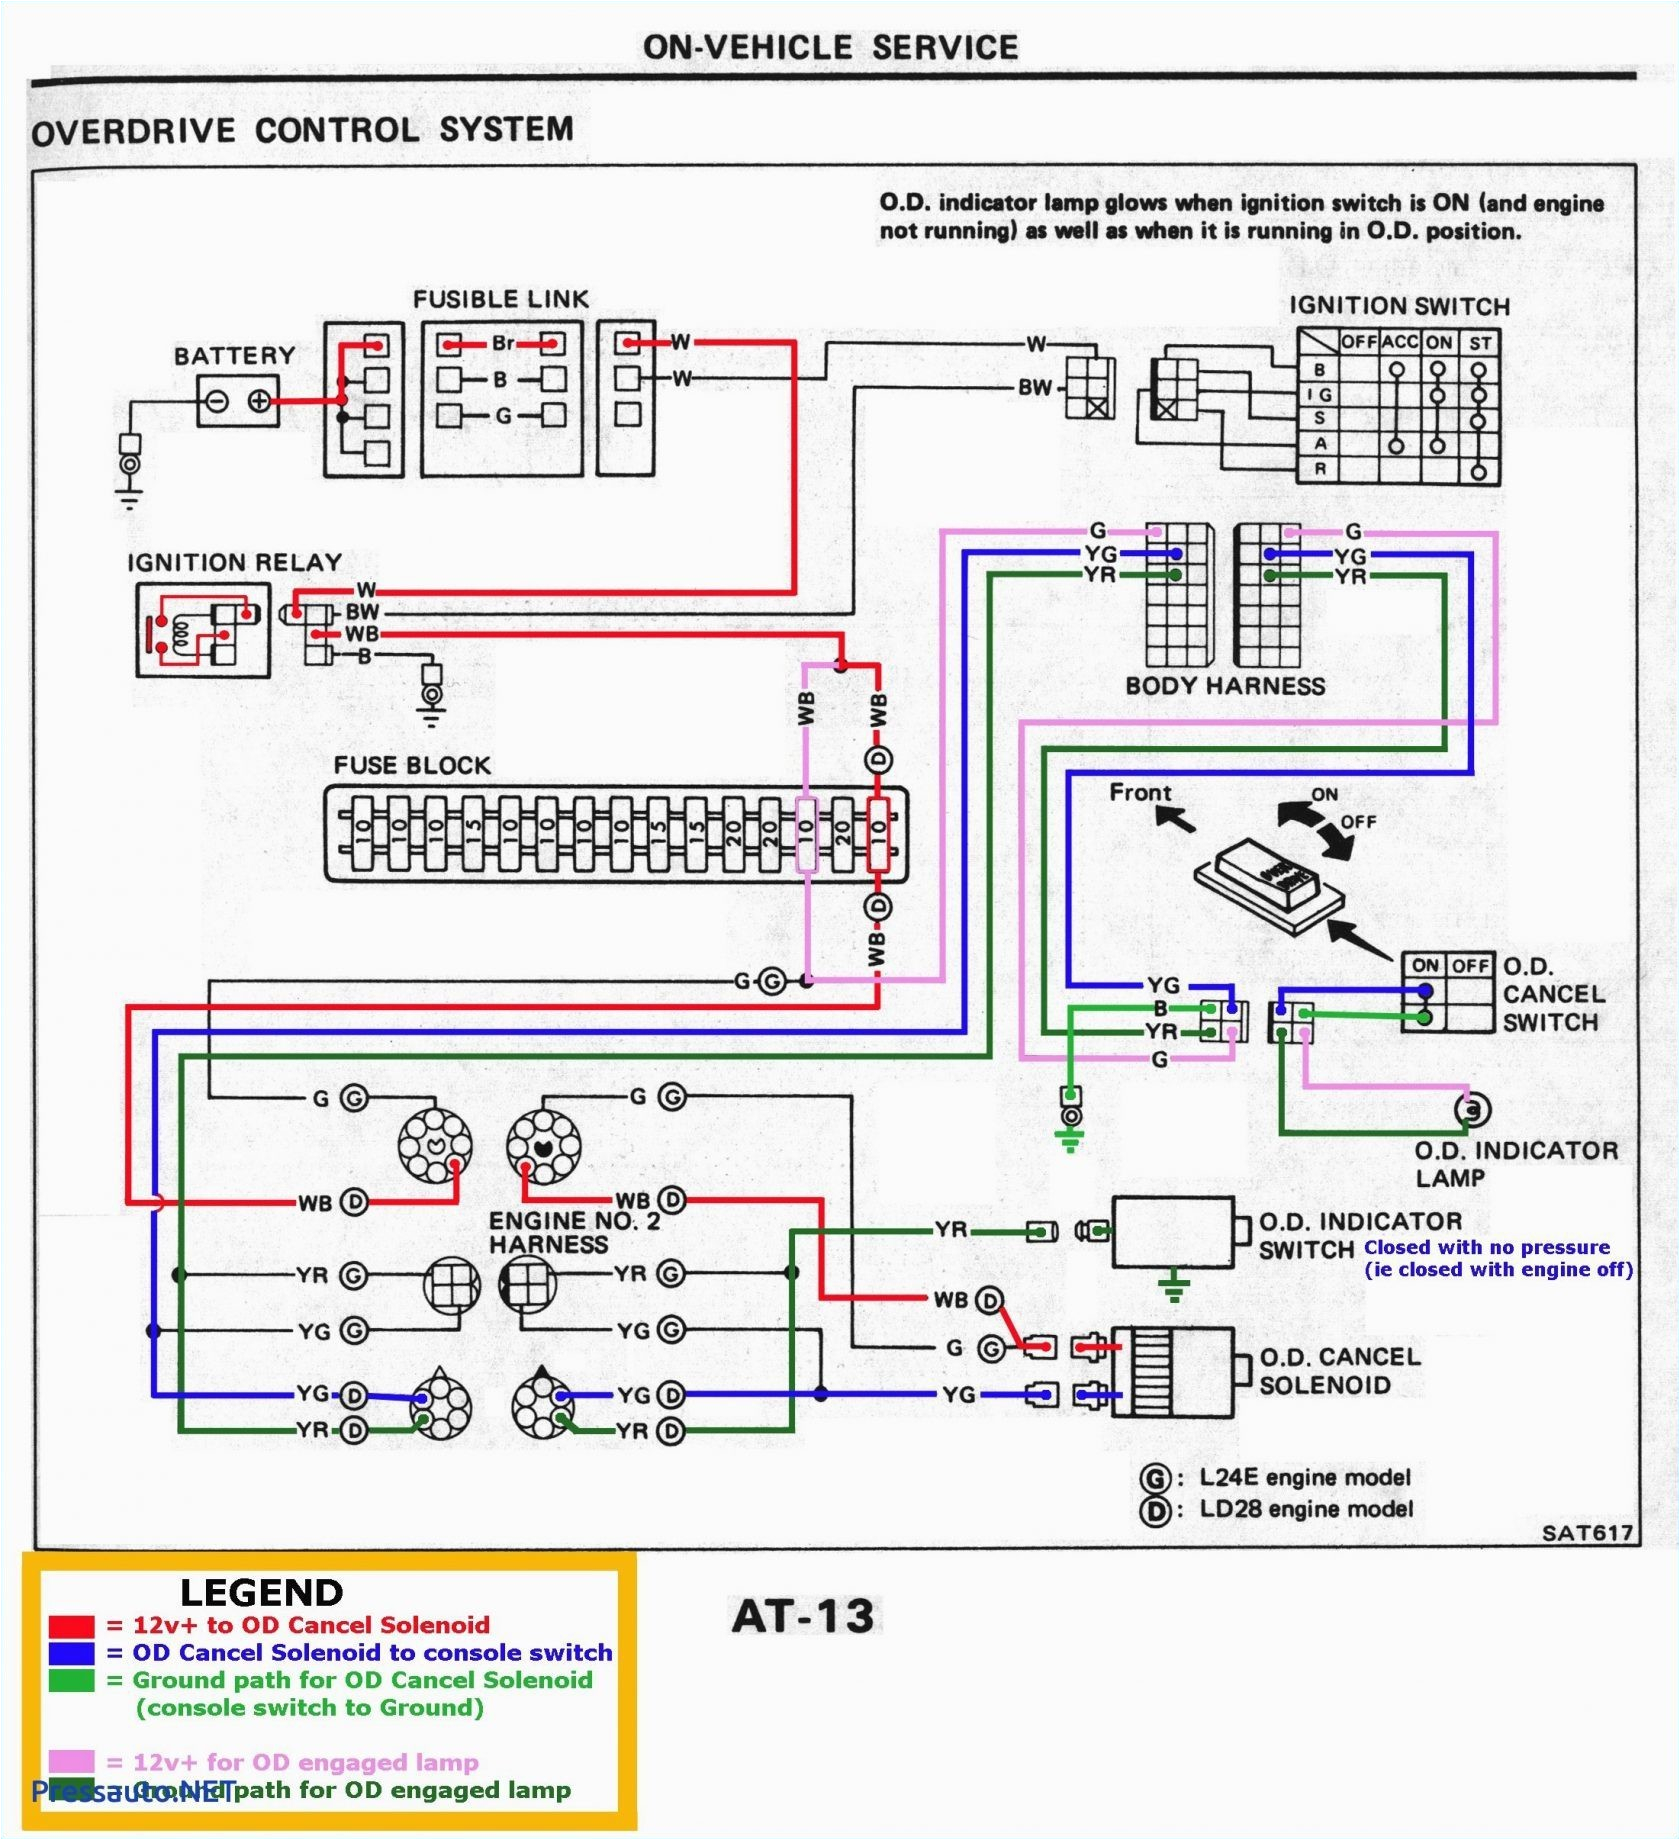 pyle 3000 wiring diagram wiring diagram mix pyle 3000 wiring diagram pyle plmra620 amplifier